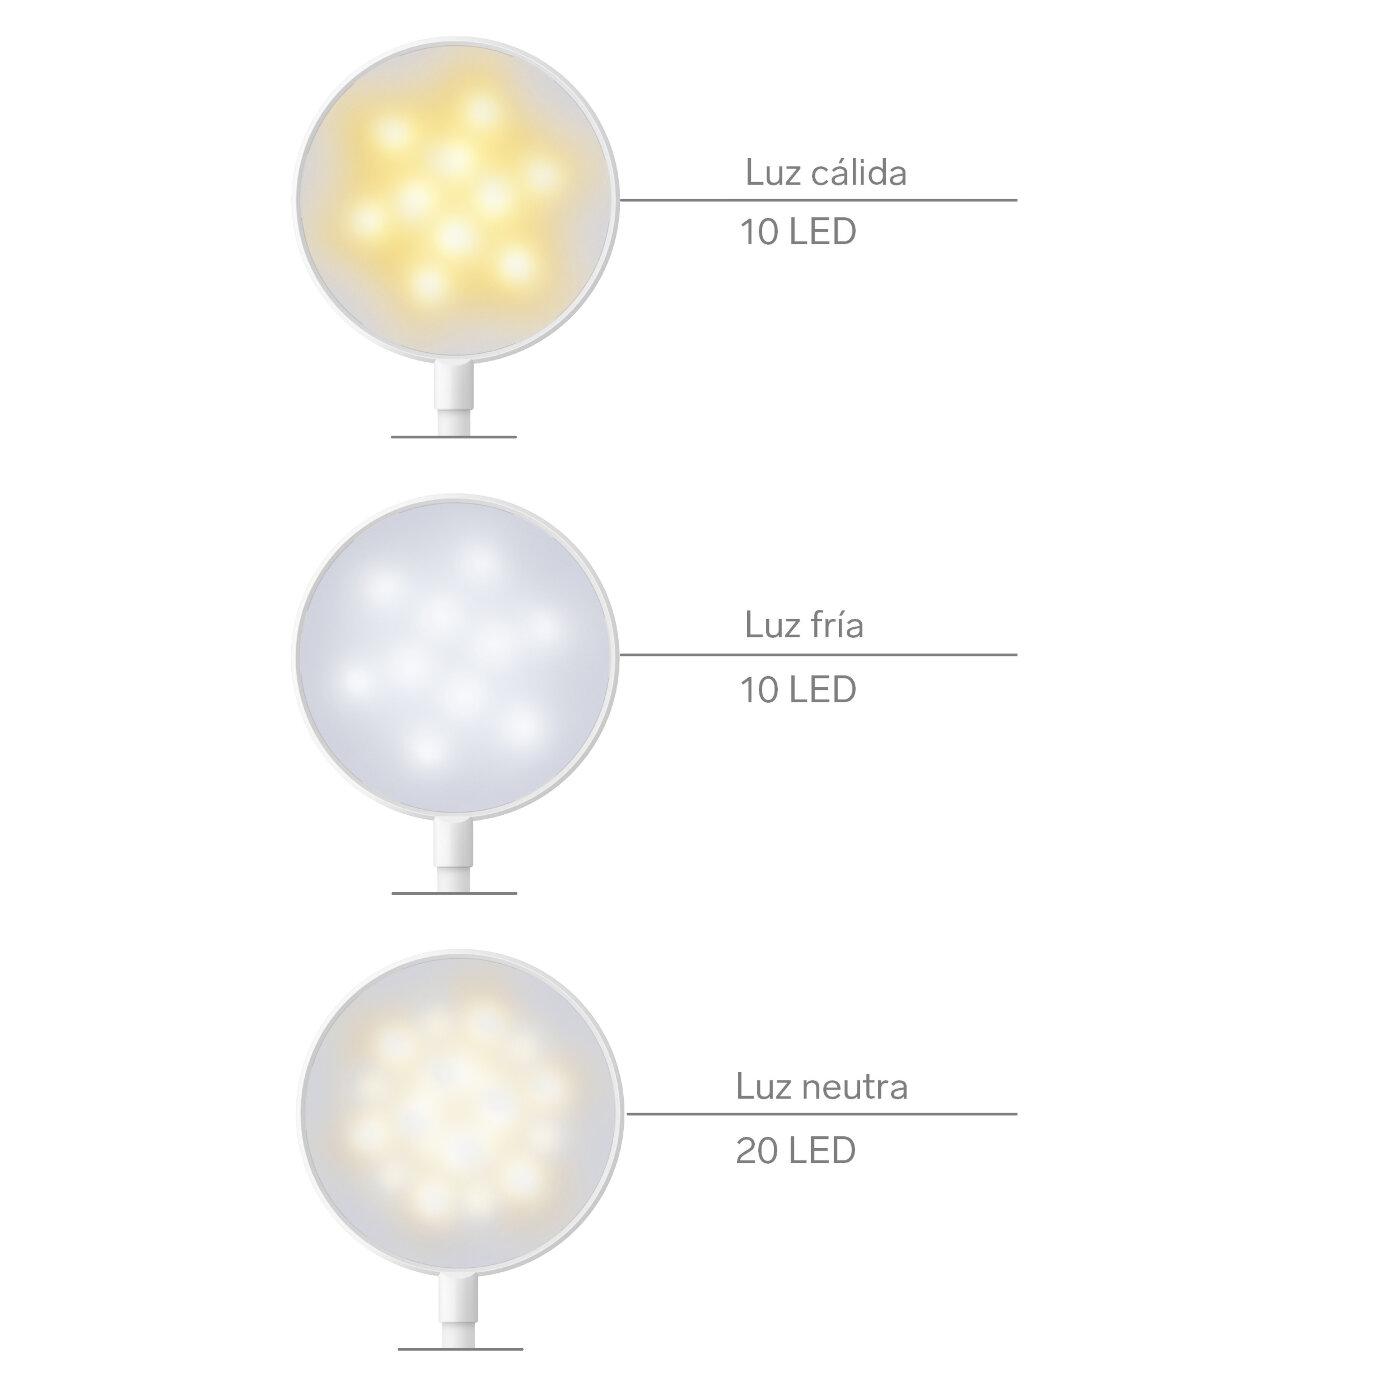 Steren Lámpara LED de luz fría, neutra o cálida, con cuello flexible, pinza y batería recargable